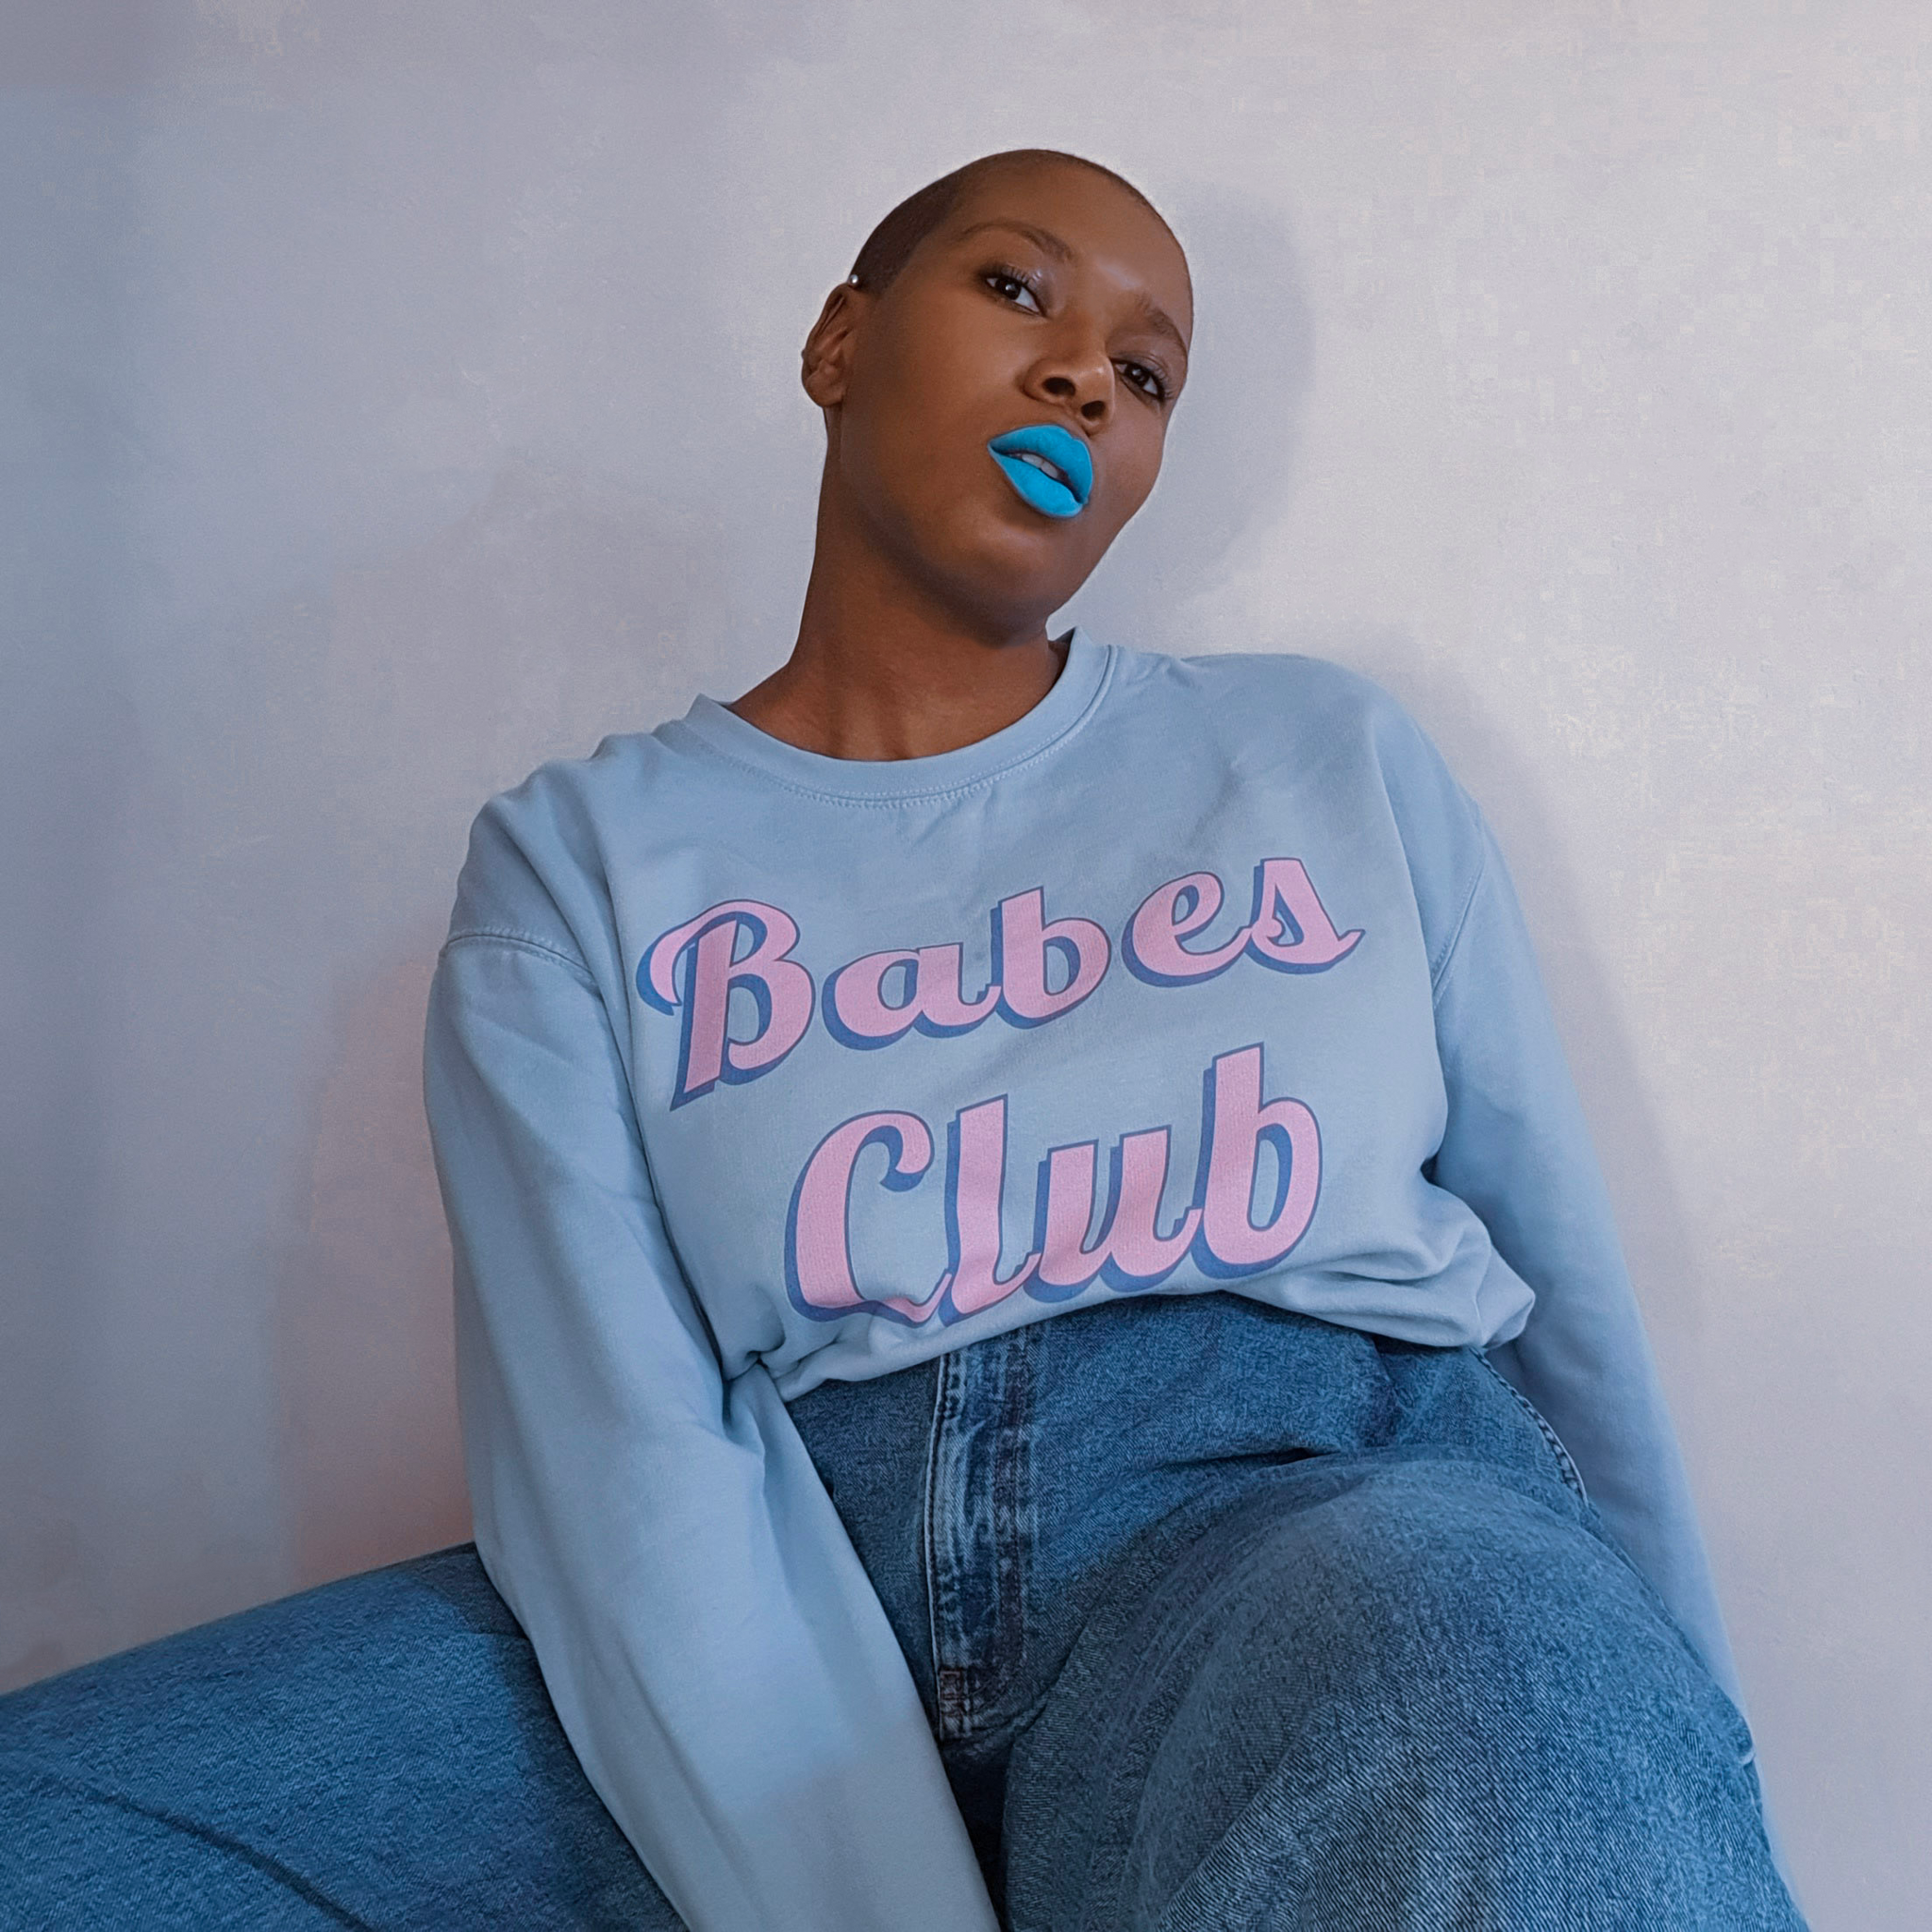 Le sweatshirt babes club existe en coloris bleu pastel